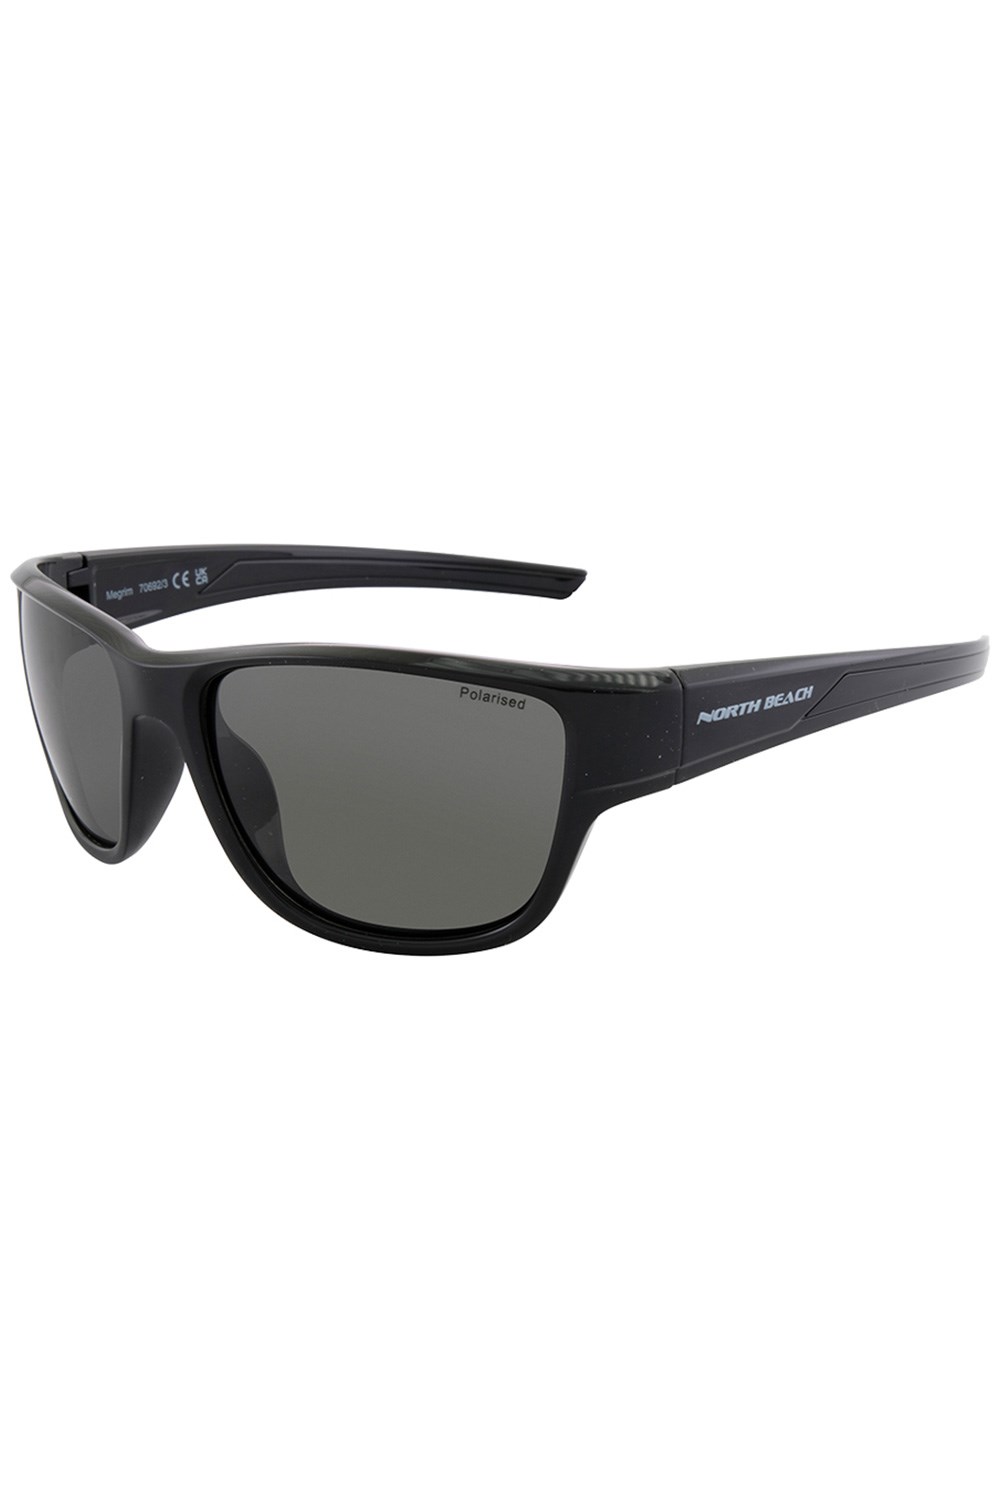 Megrim Unisex Polarized Sunglasses -